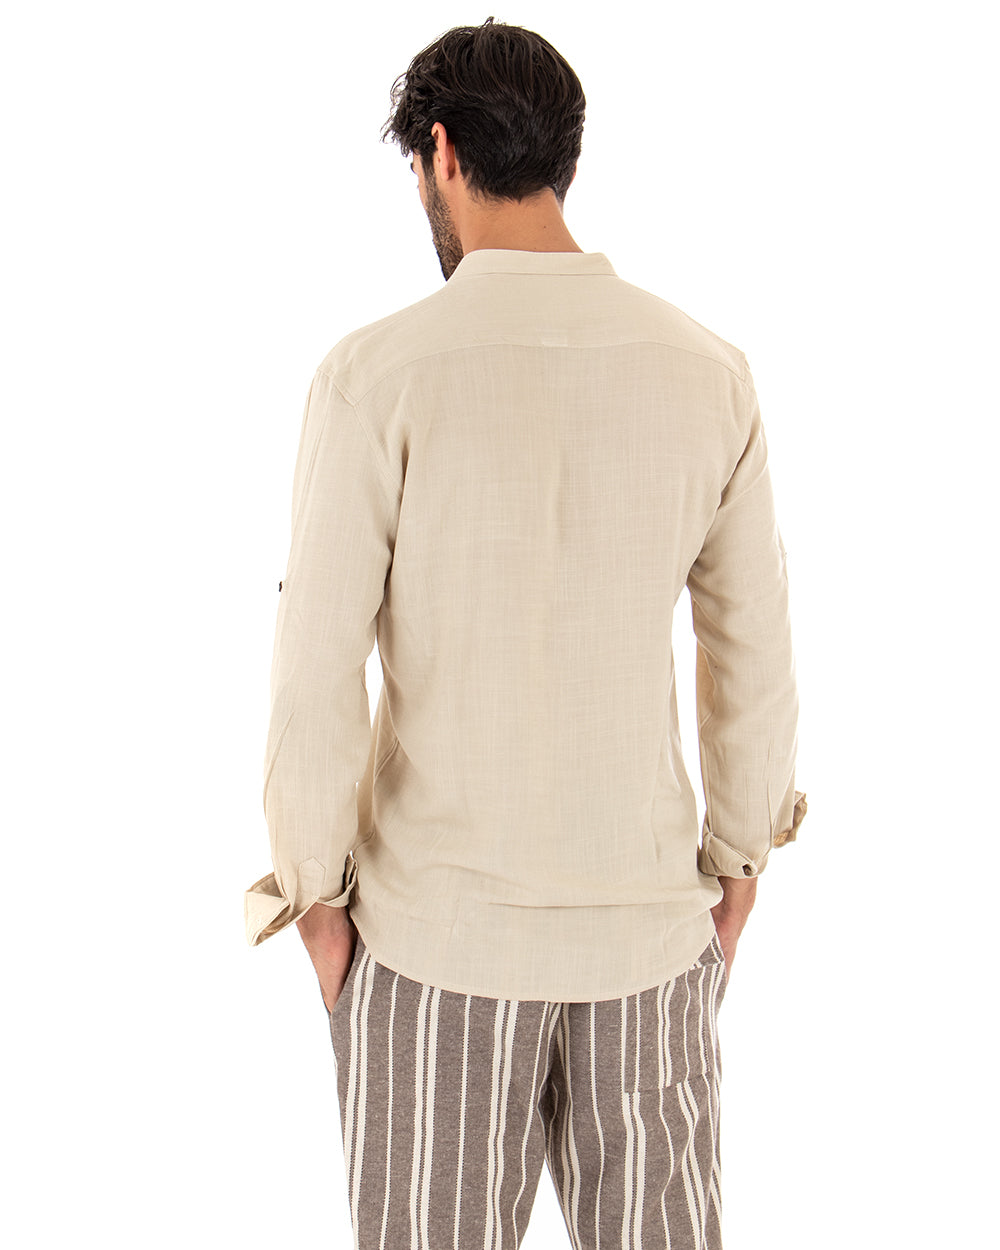 Camicia Uomo Collo Coreano Manica Lunga Regular Fit Viscosa Morbida Beige GIOSAL-C2414A